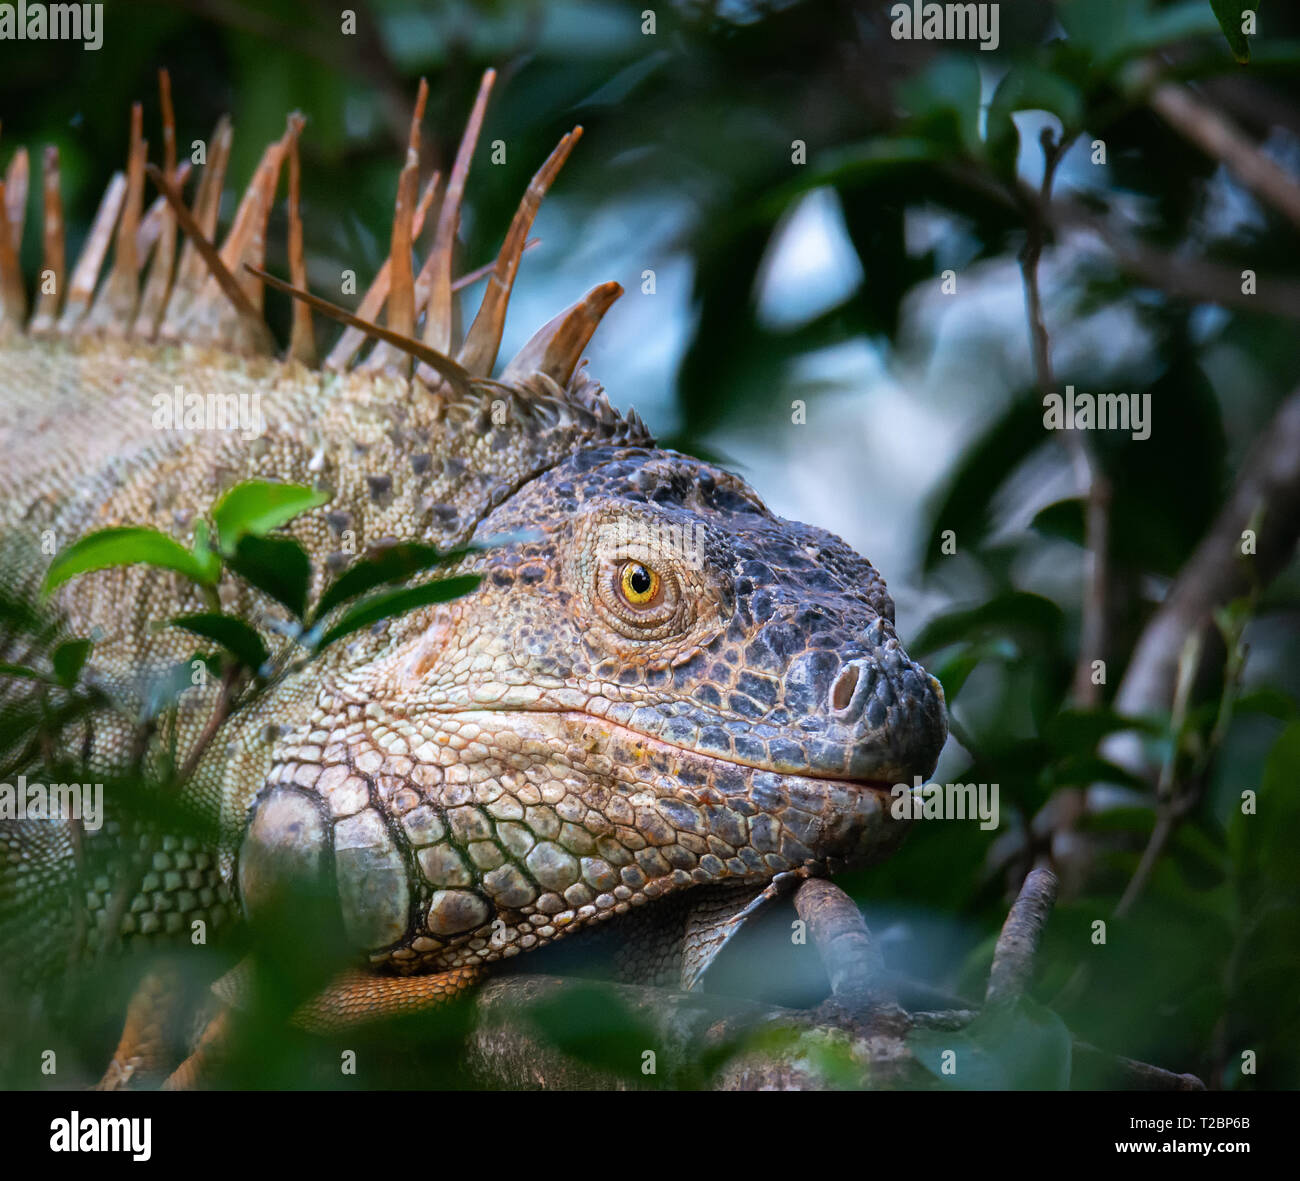 Inserimenti della testa attraverso una apertura nel vegatation un iguana verde muoversi lentamente in avanti con la bocca chiusa Foto Stock